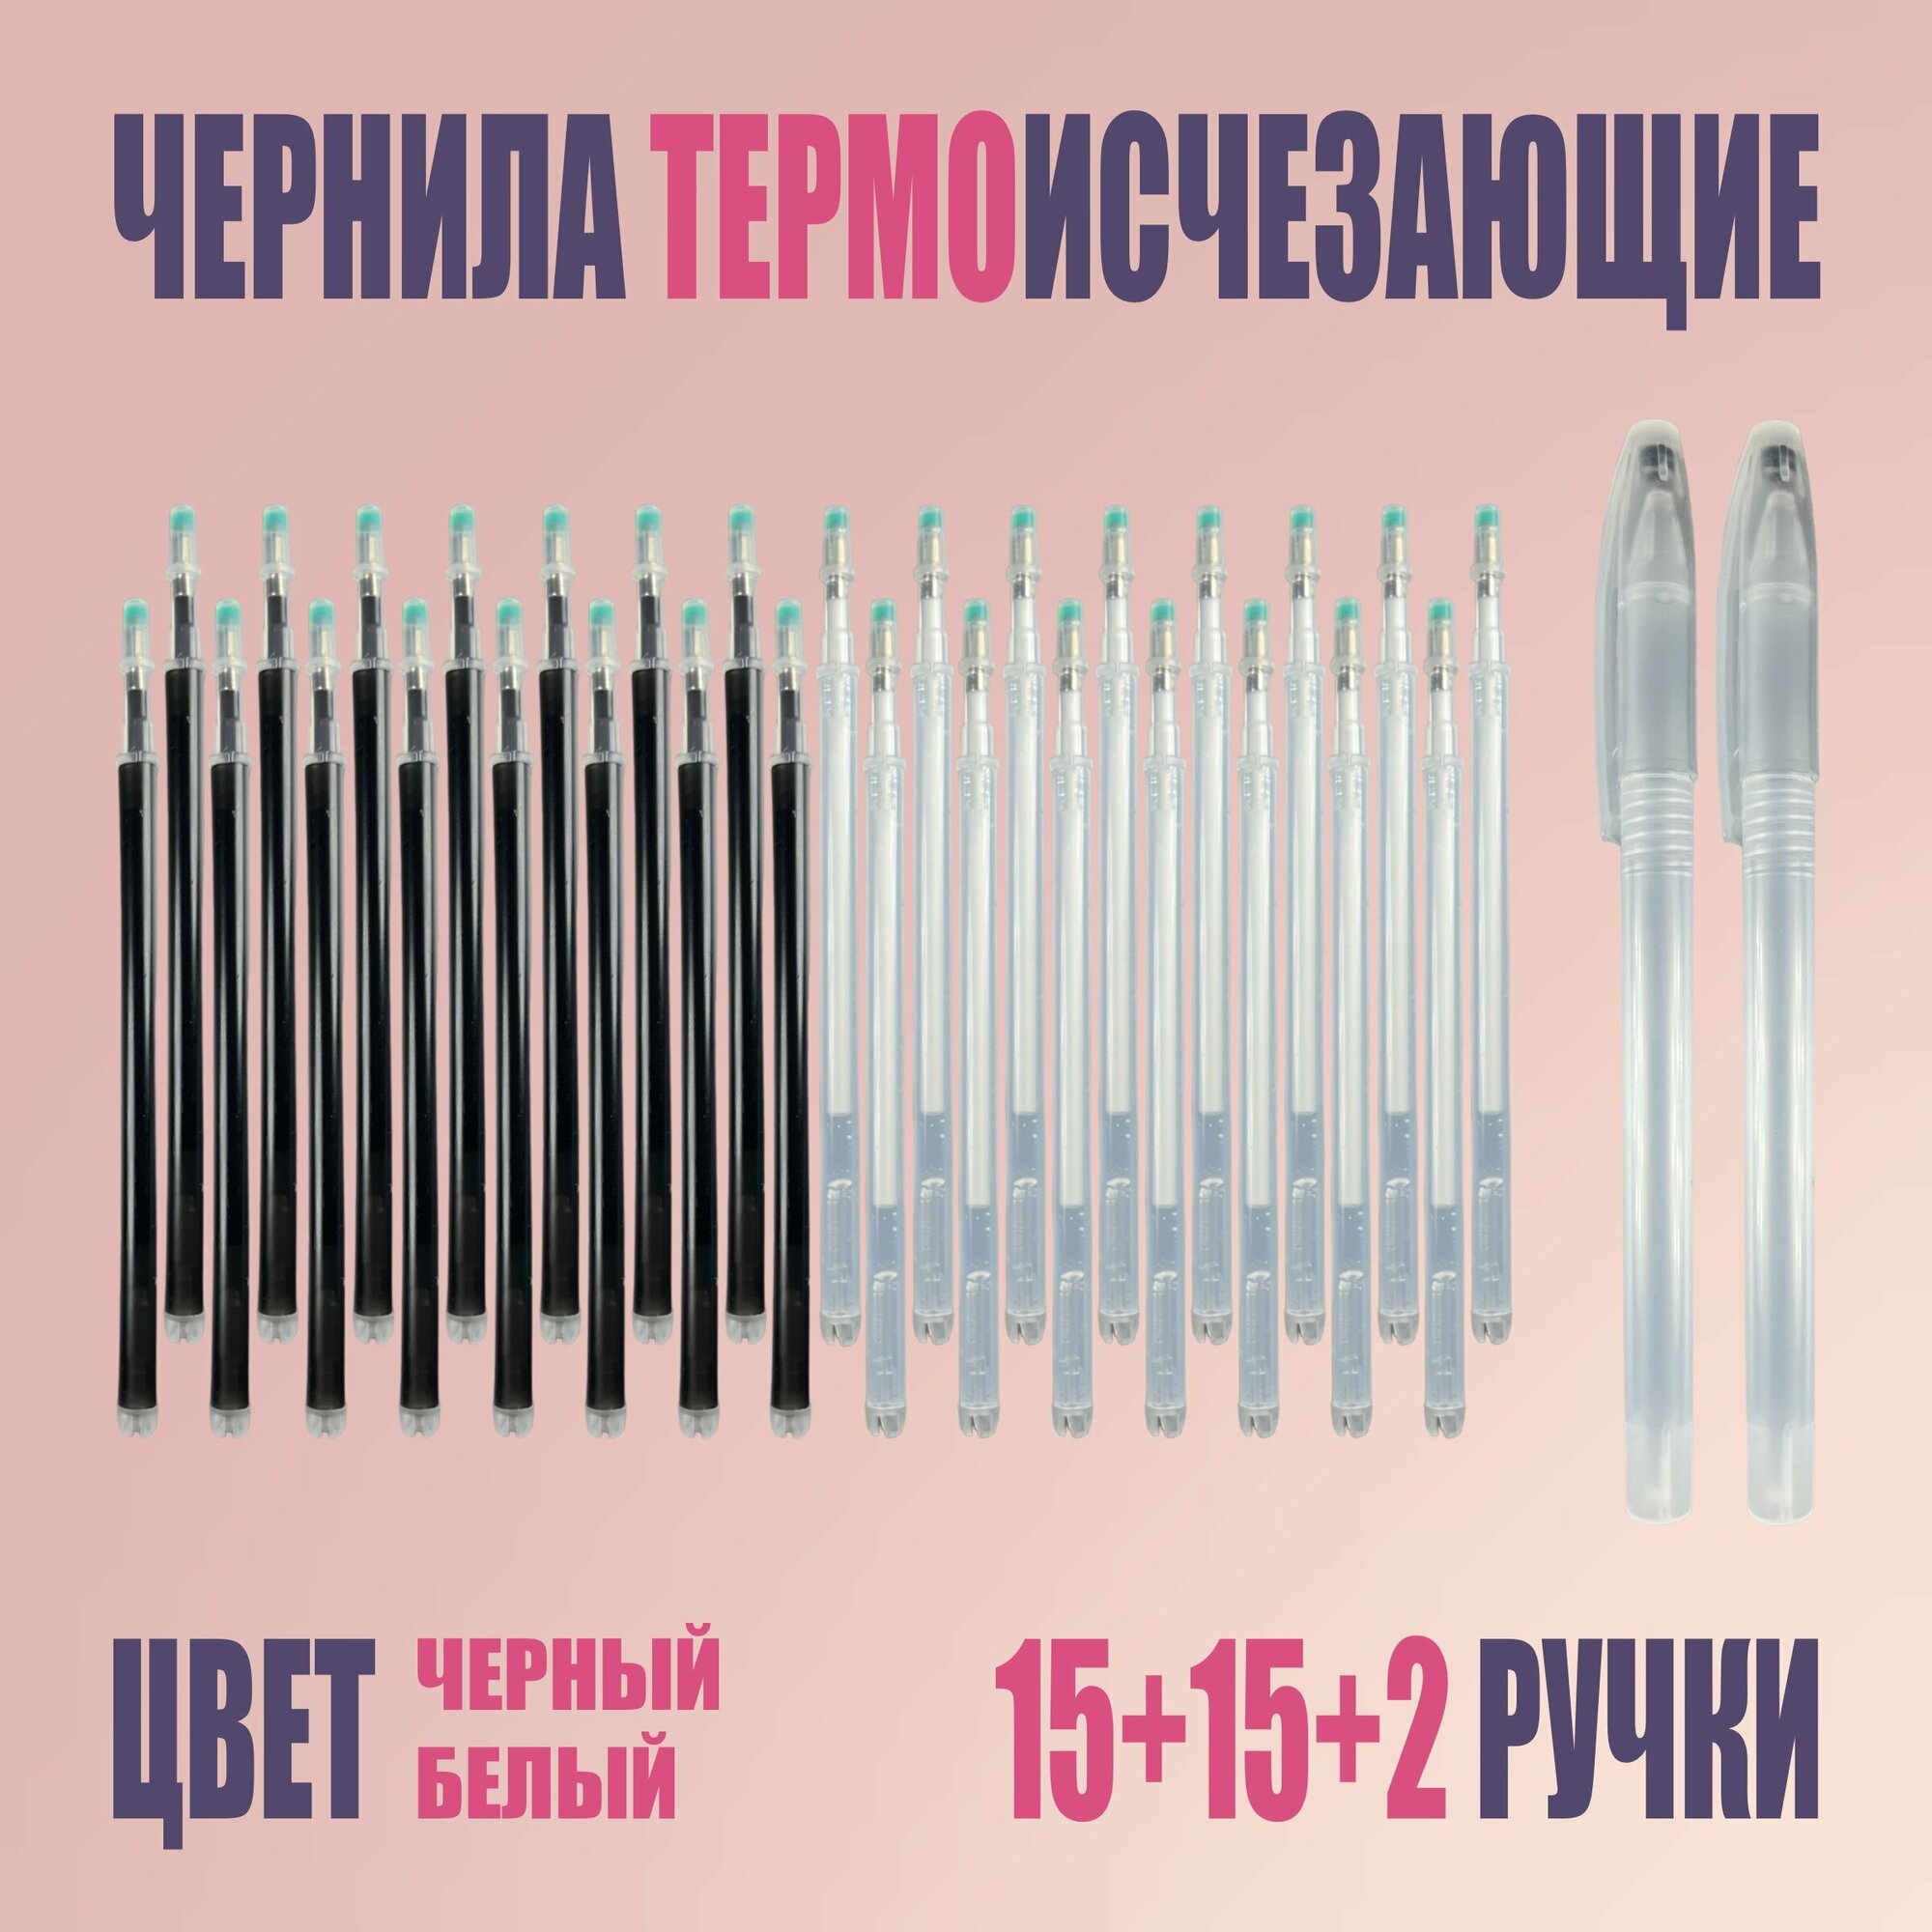 Термоисчезающие ручки и стержни, белые и черные, 30+2 шт.